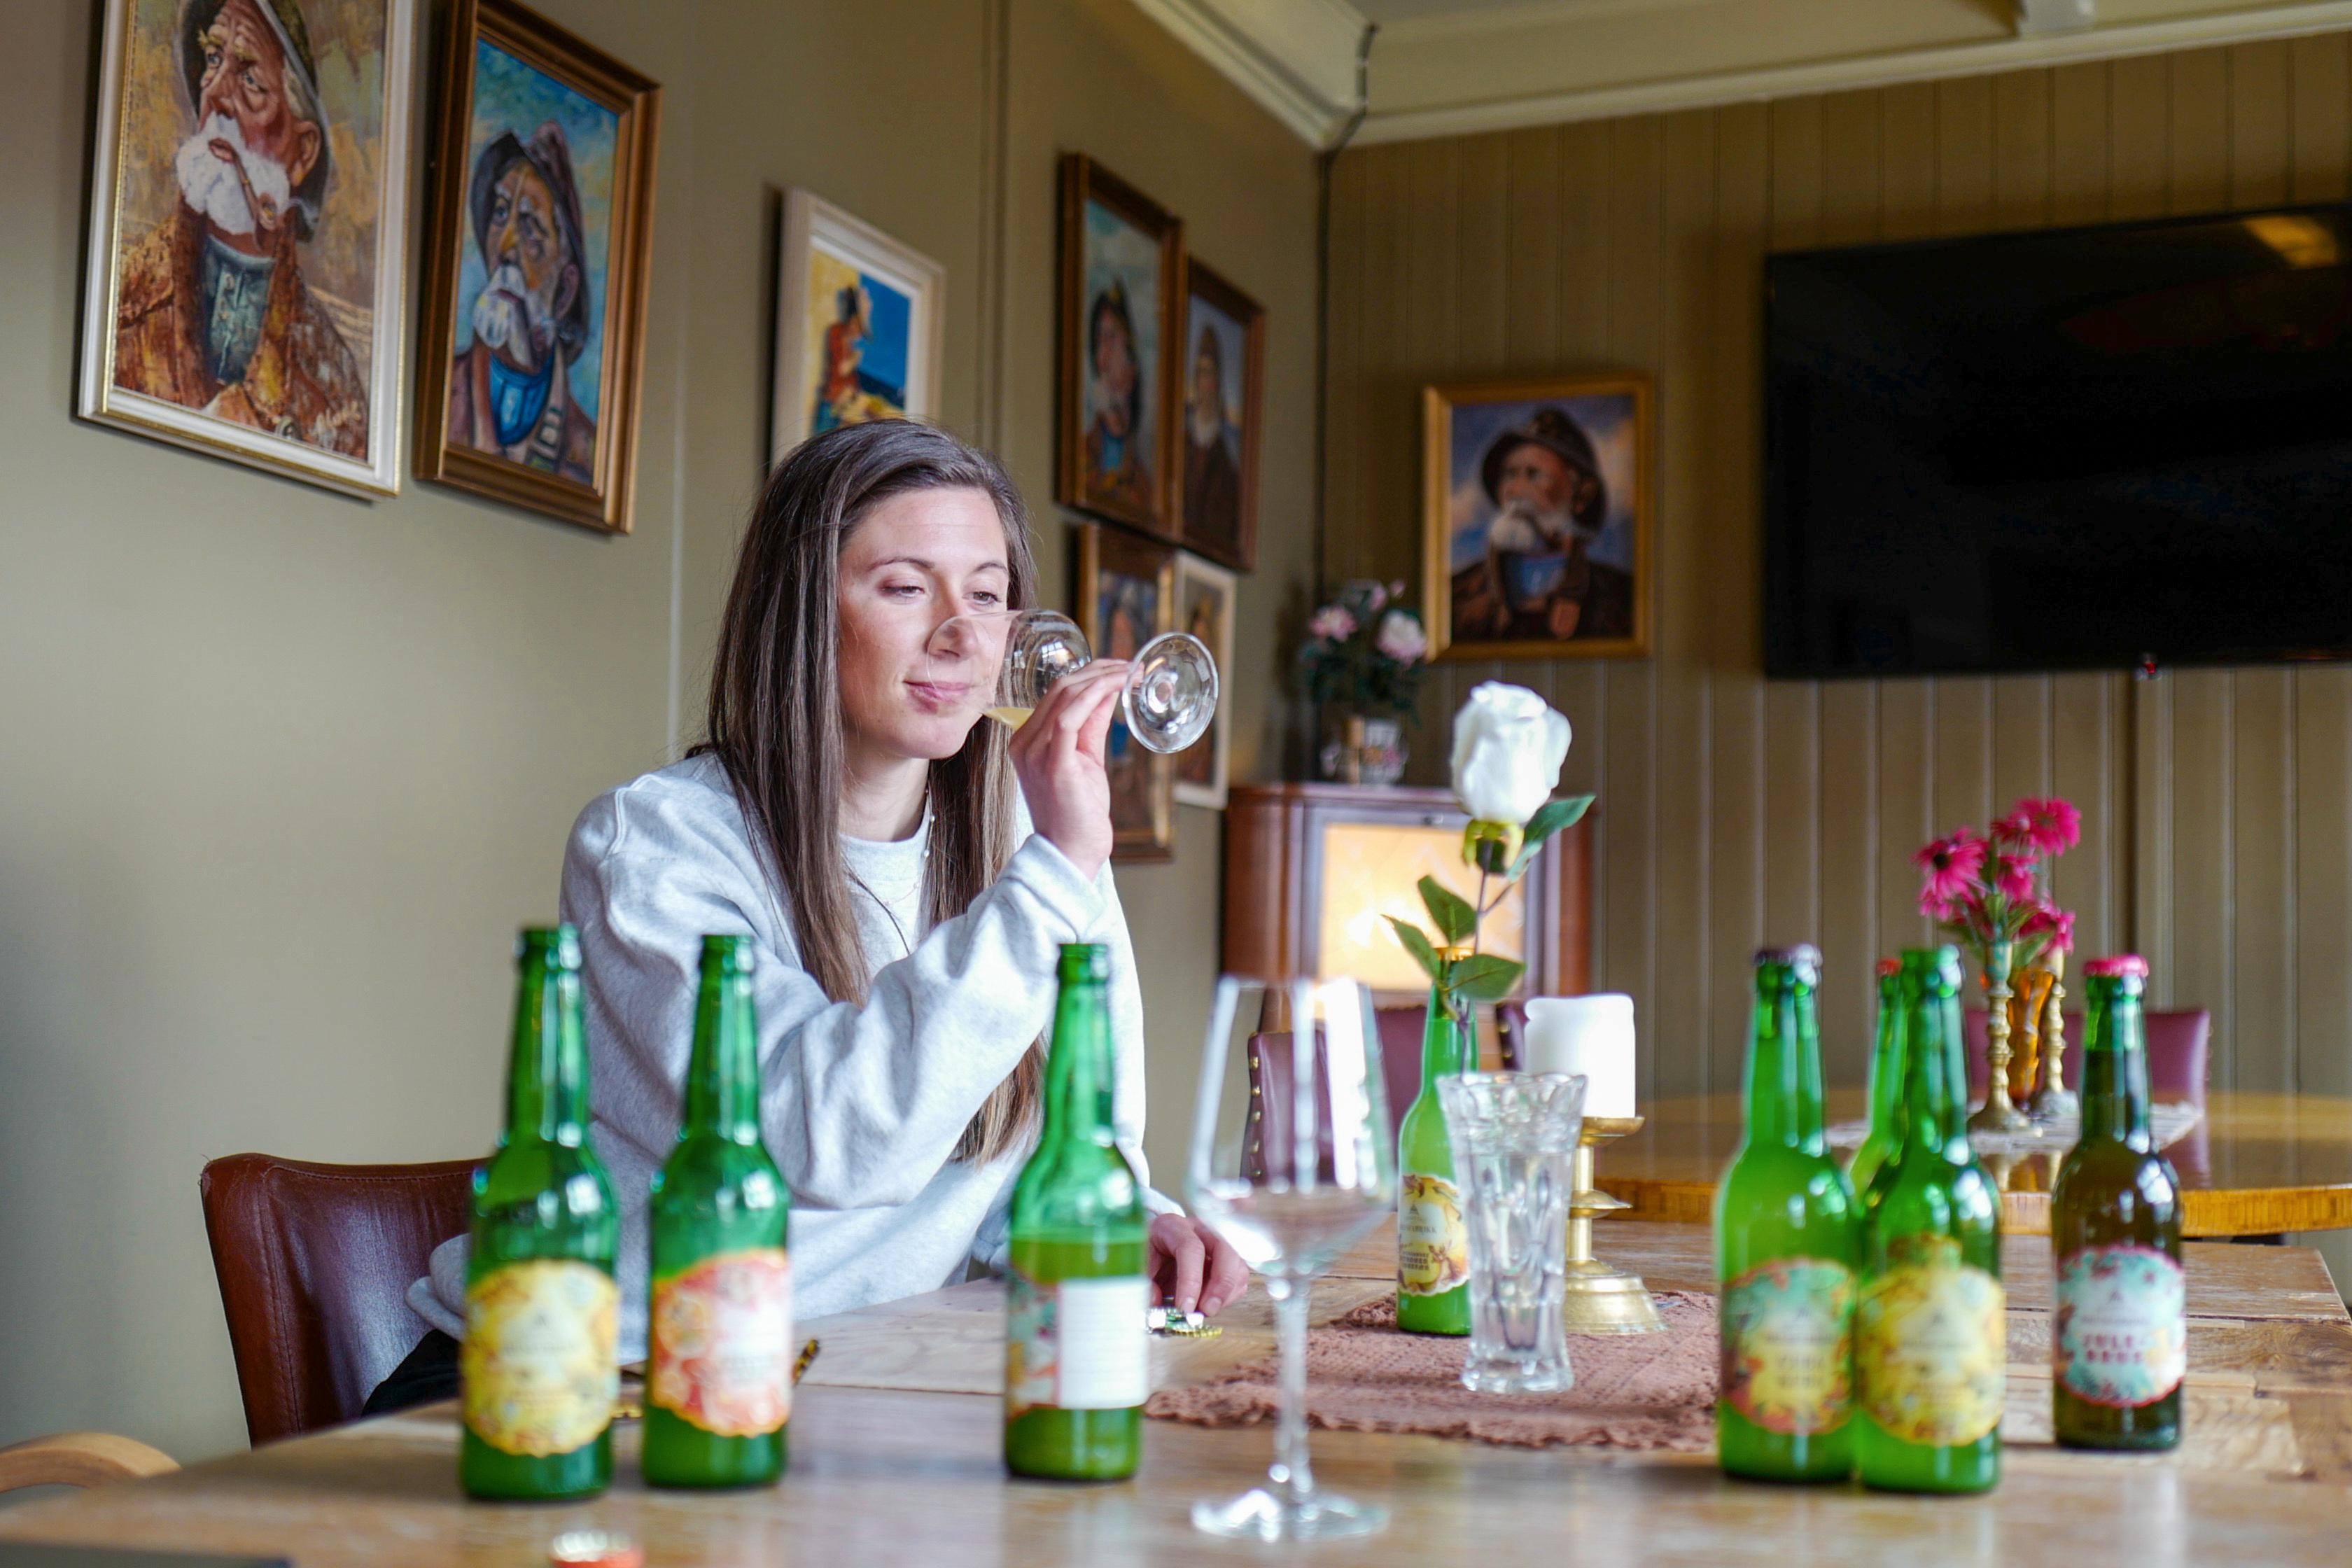 BRUS ISTEDENFOR ALKOHOL: Gjengen bak Grimstad brusfabrikk savnet et godt alternativ til alkoholholdig drikke. Den tanken ble starten på drømmen og målet om å skape verdens beste brus.